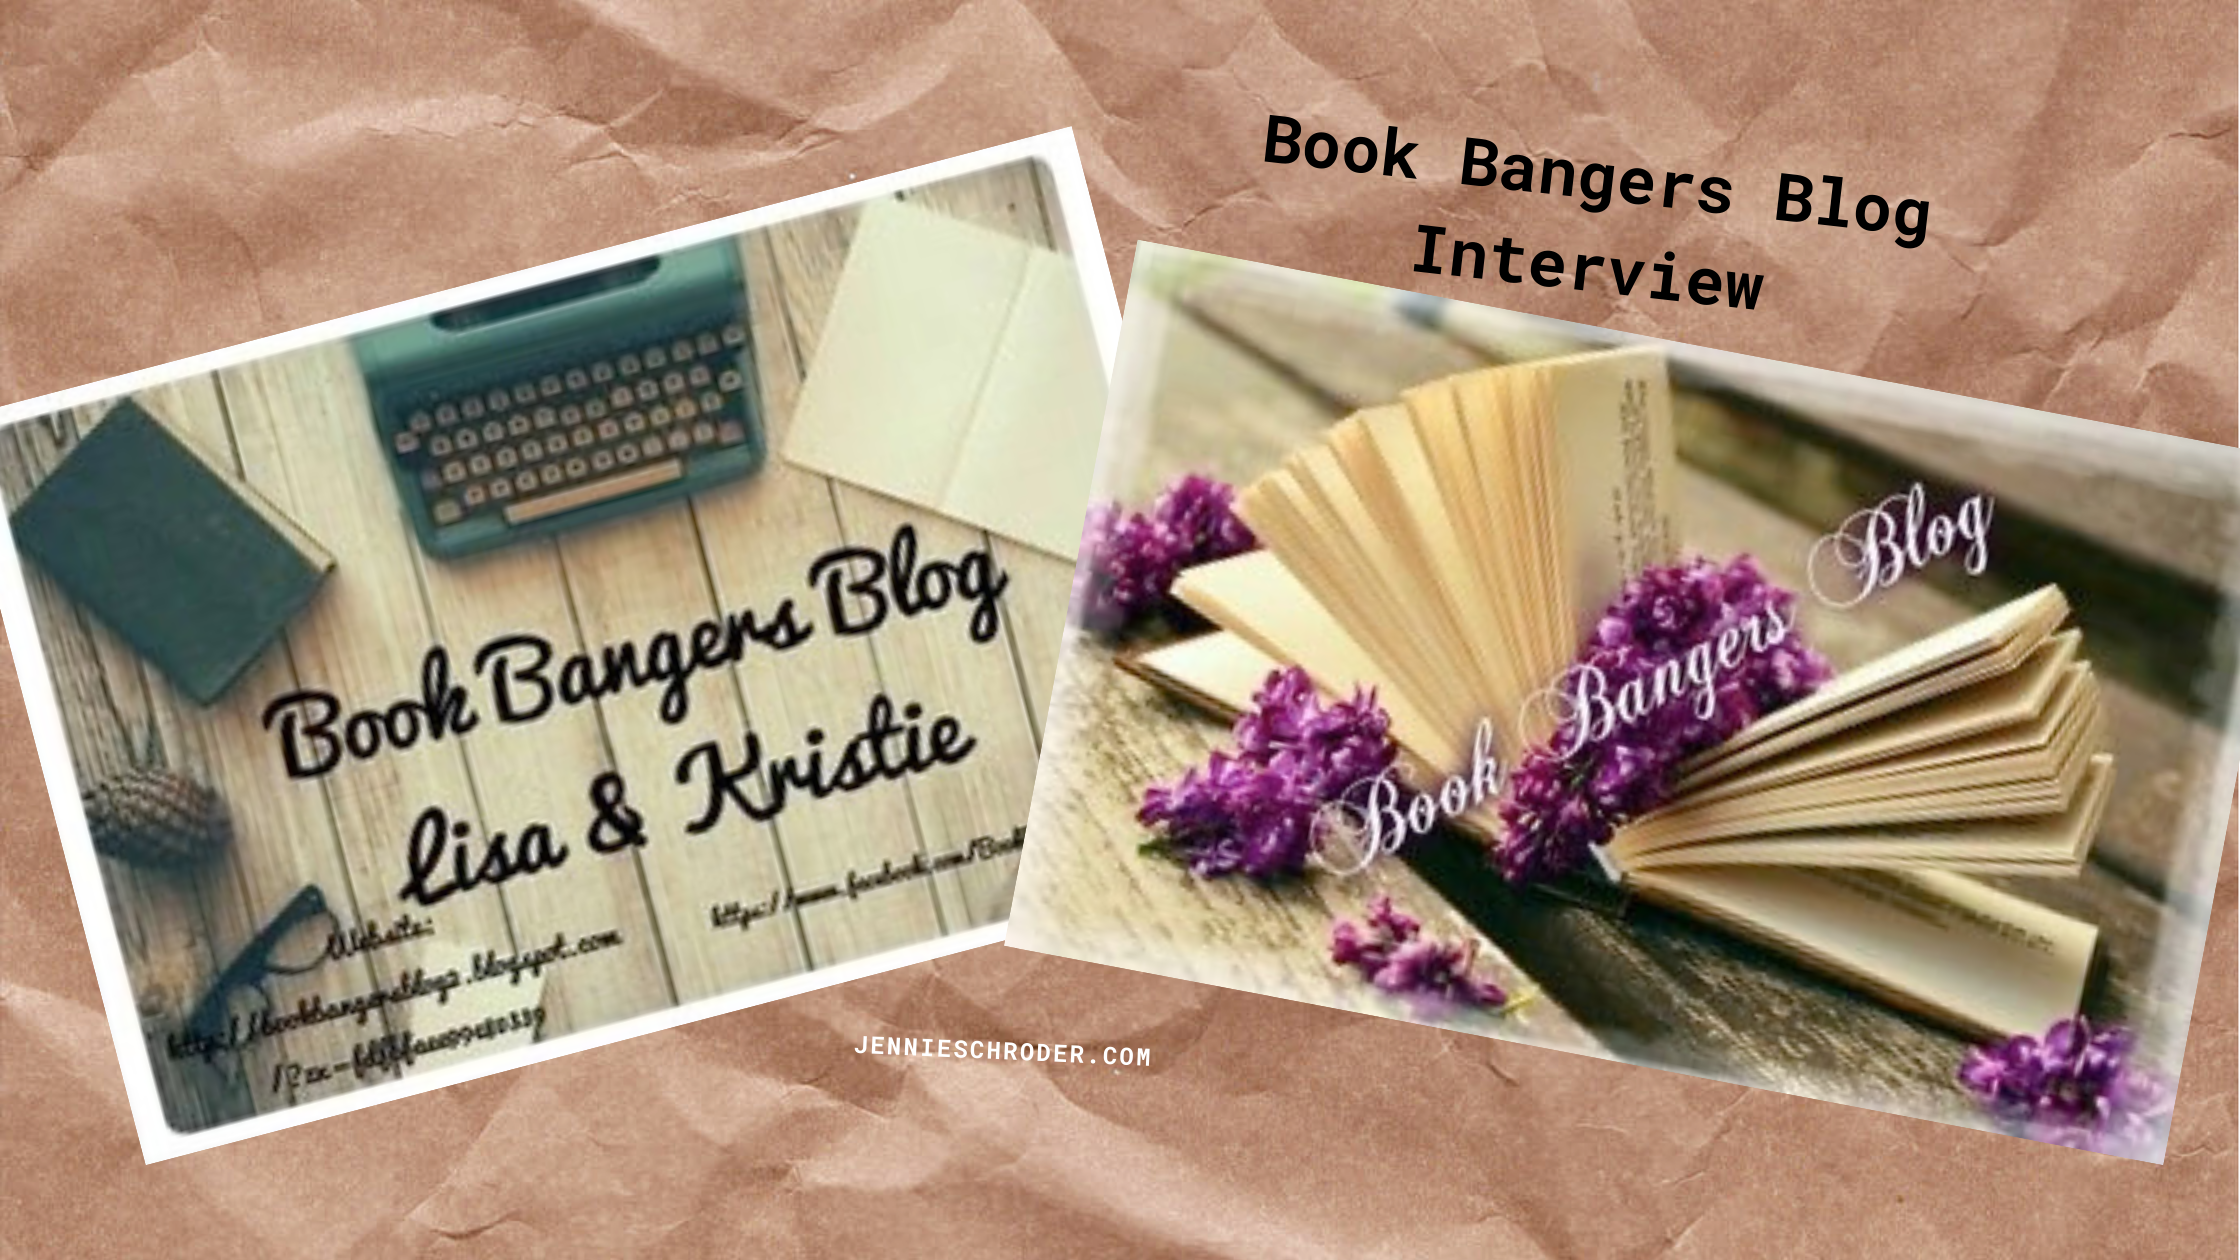 Book Bangers Blog interview